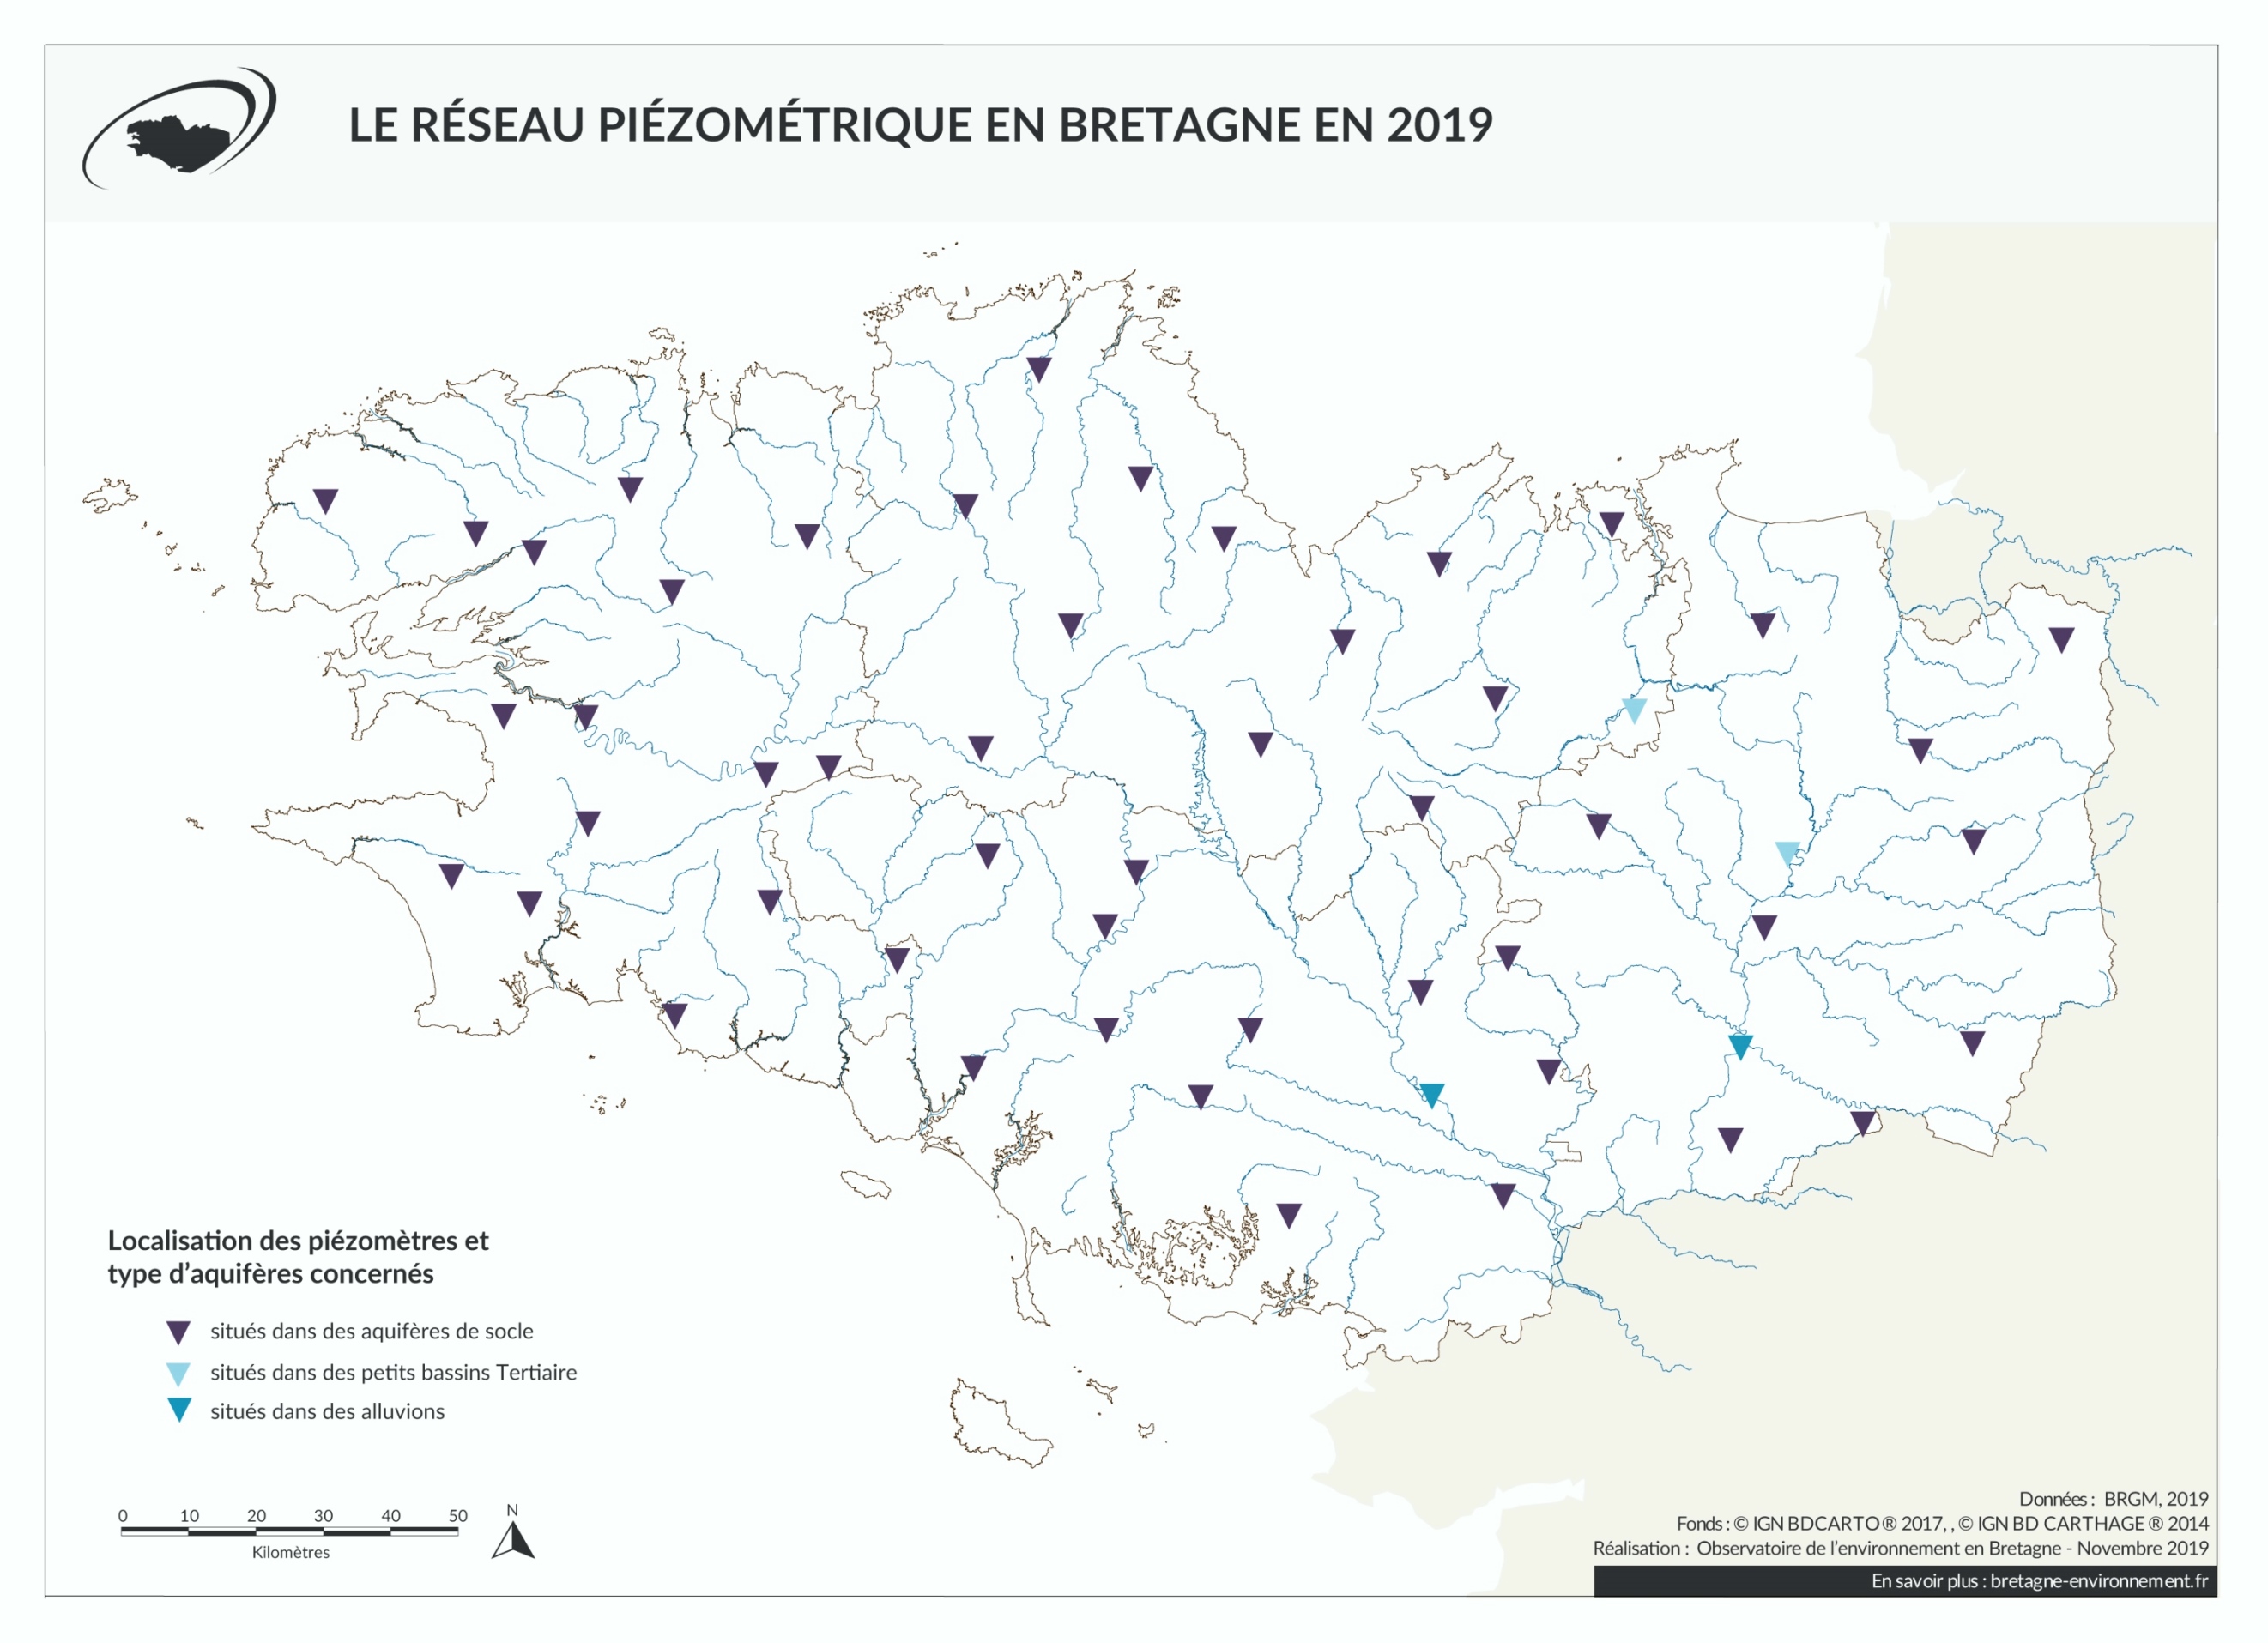 Le réseau piézométrique en Bretagne en 2019